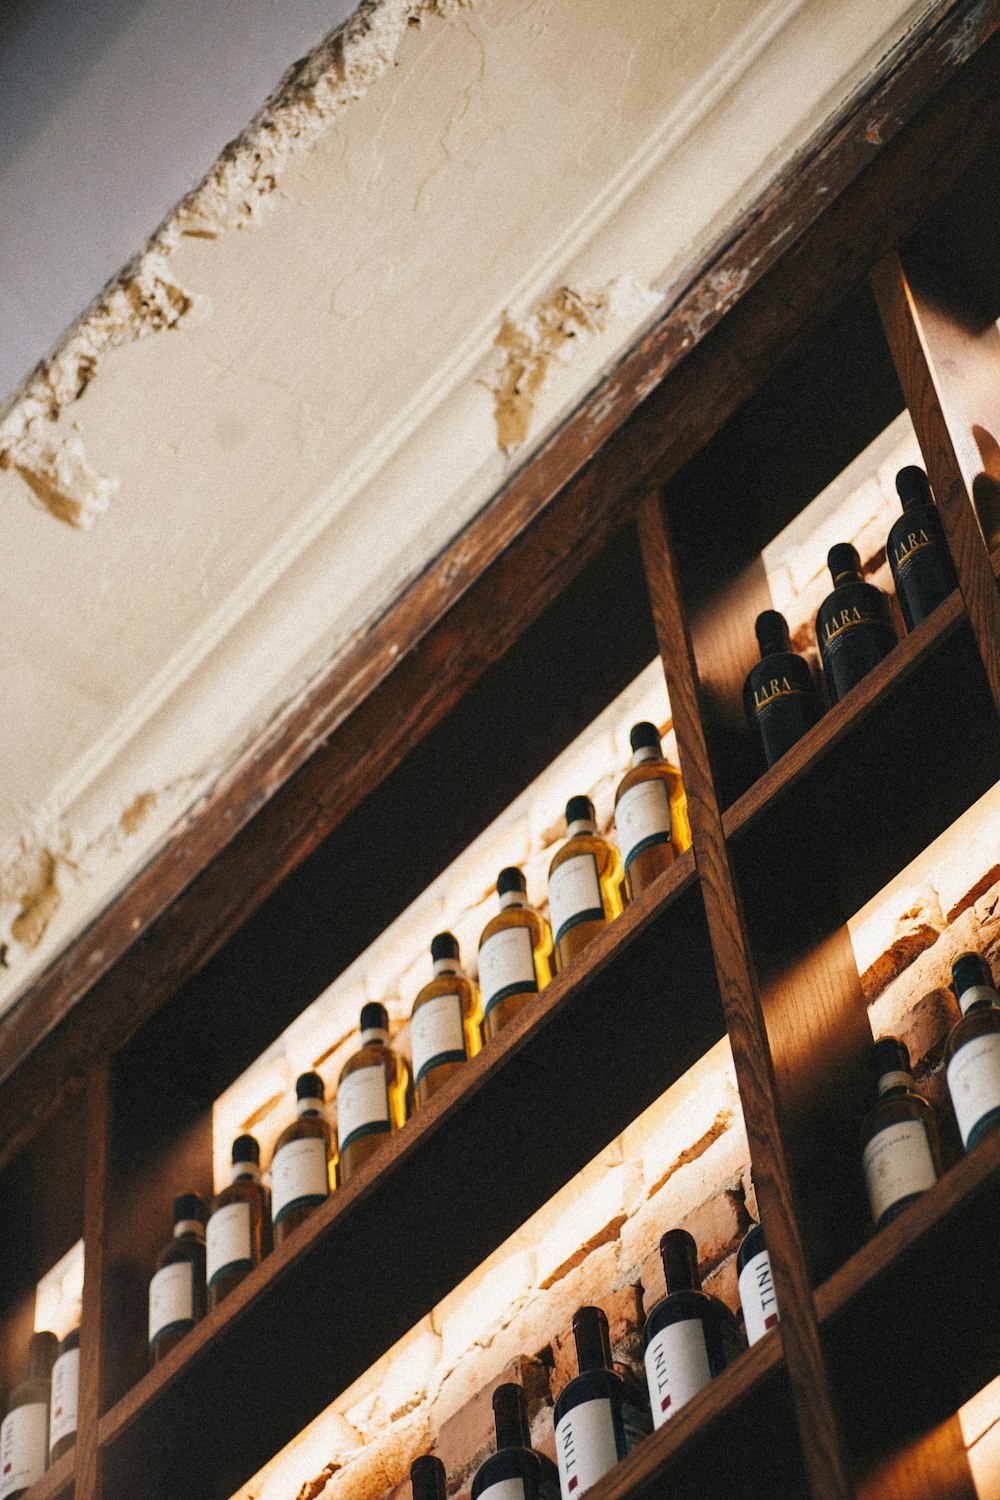 bottiglie su scaffale di legno marrone